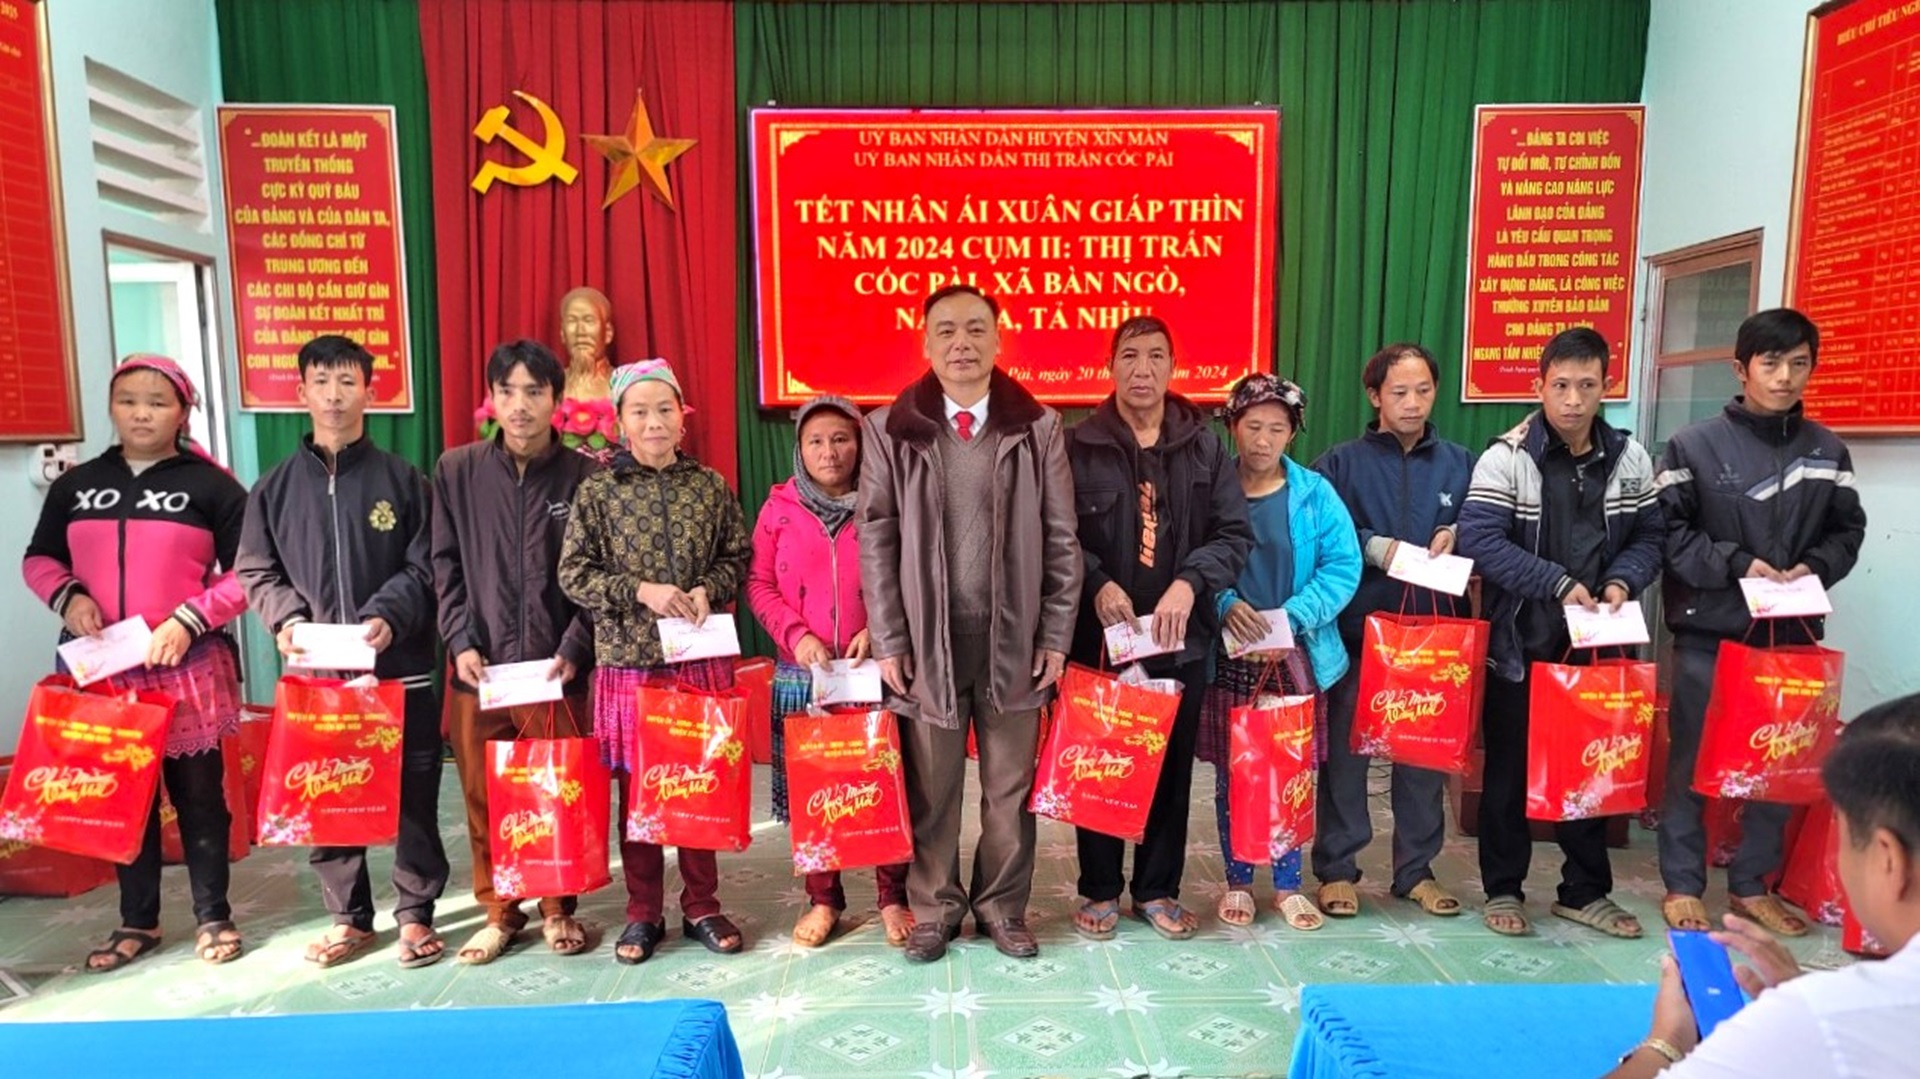 Thị trấn Cốc Pài tổ chức Tết nhân ái Giáp Thìn 2024